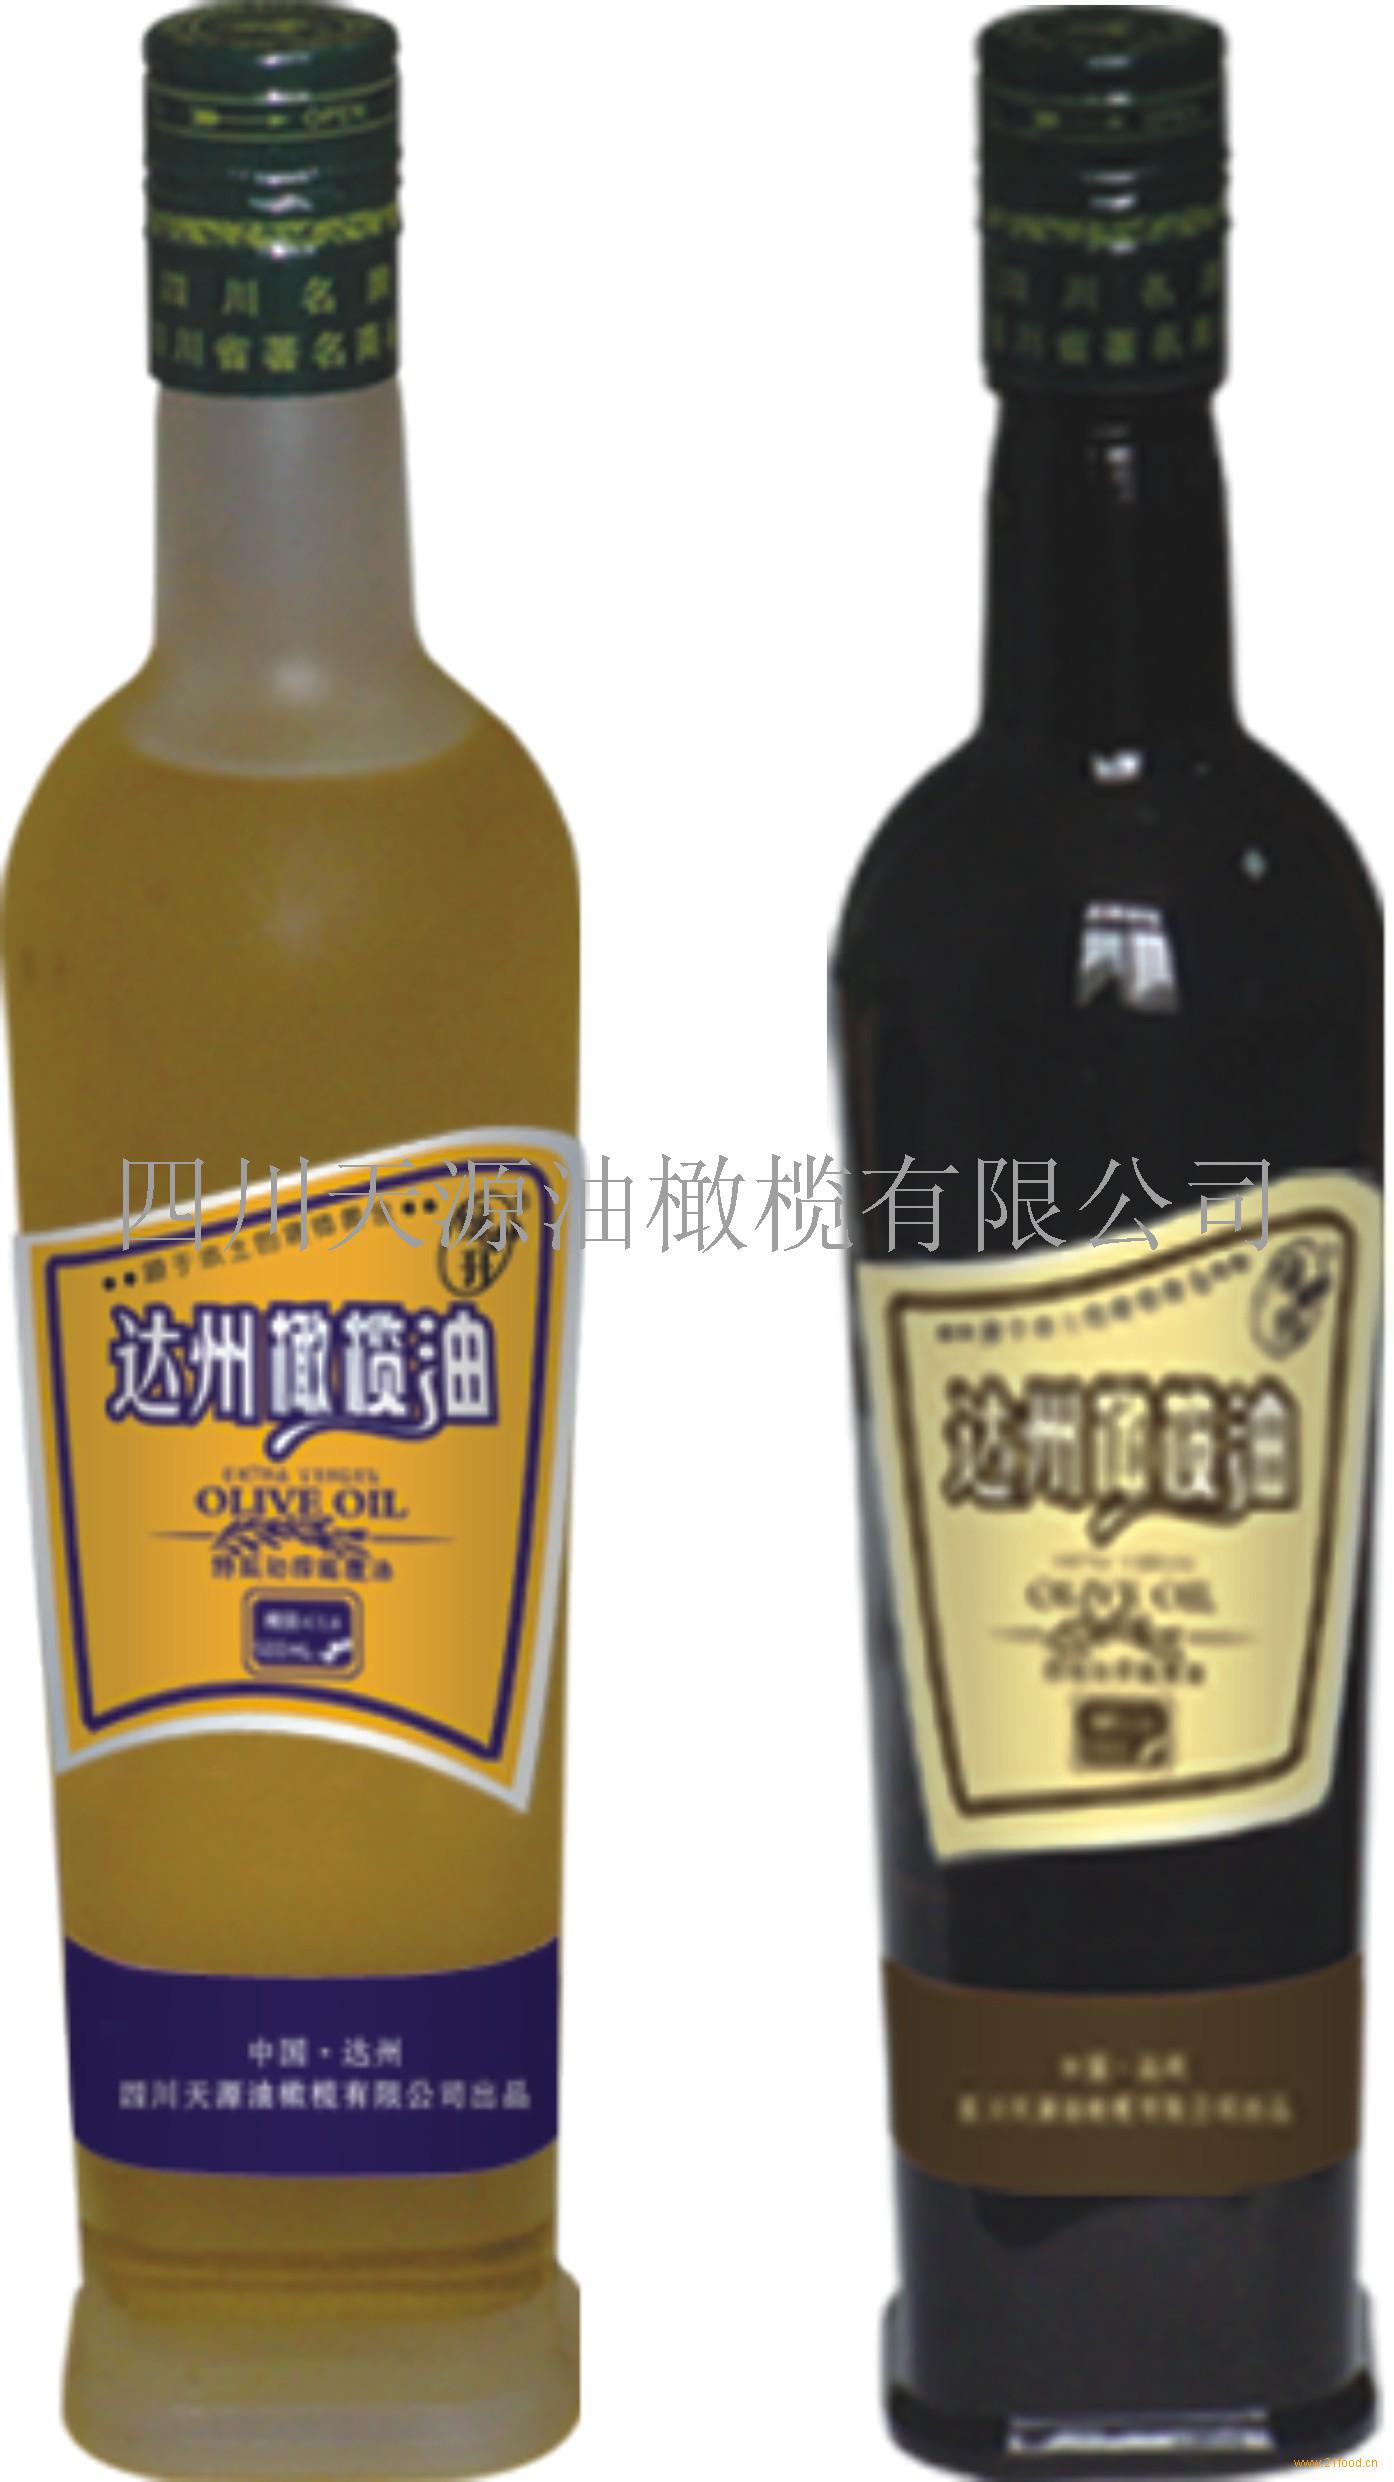 黑瓶,橄榄油(中国 四川达州)